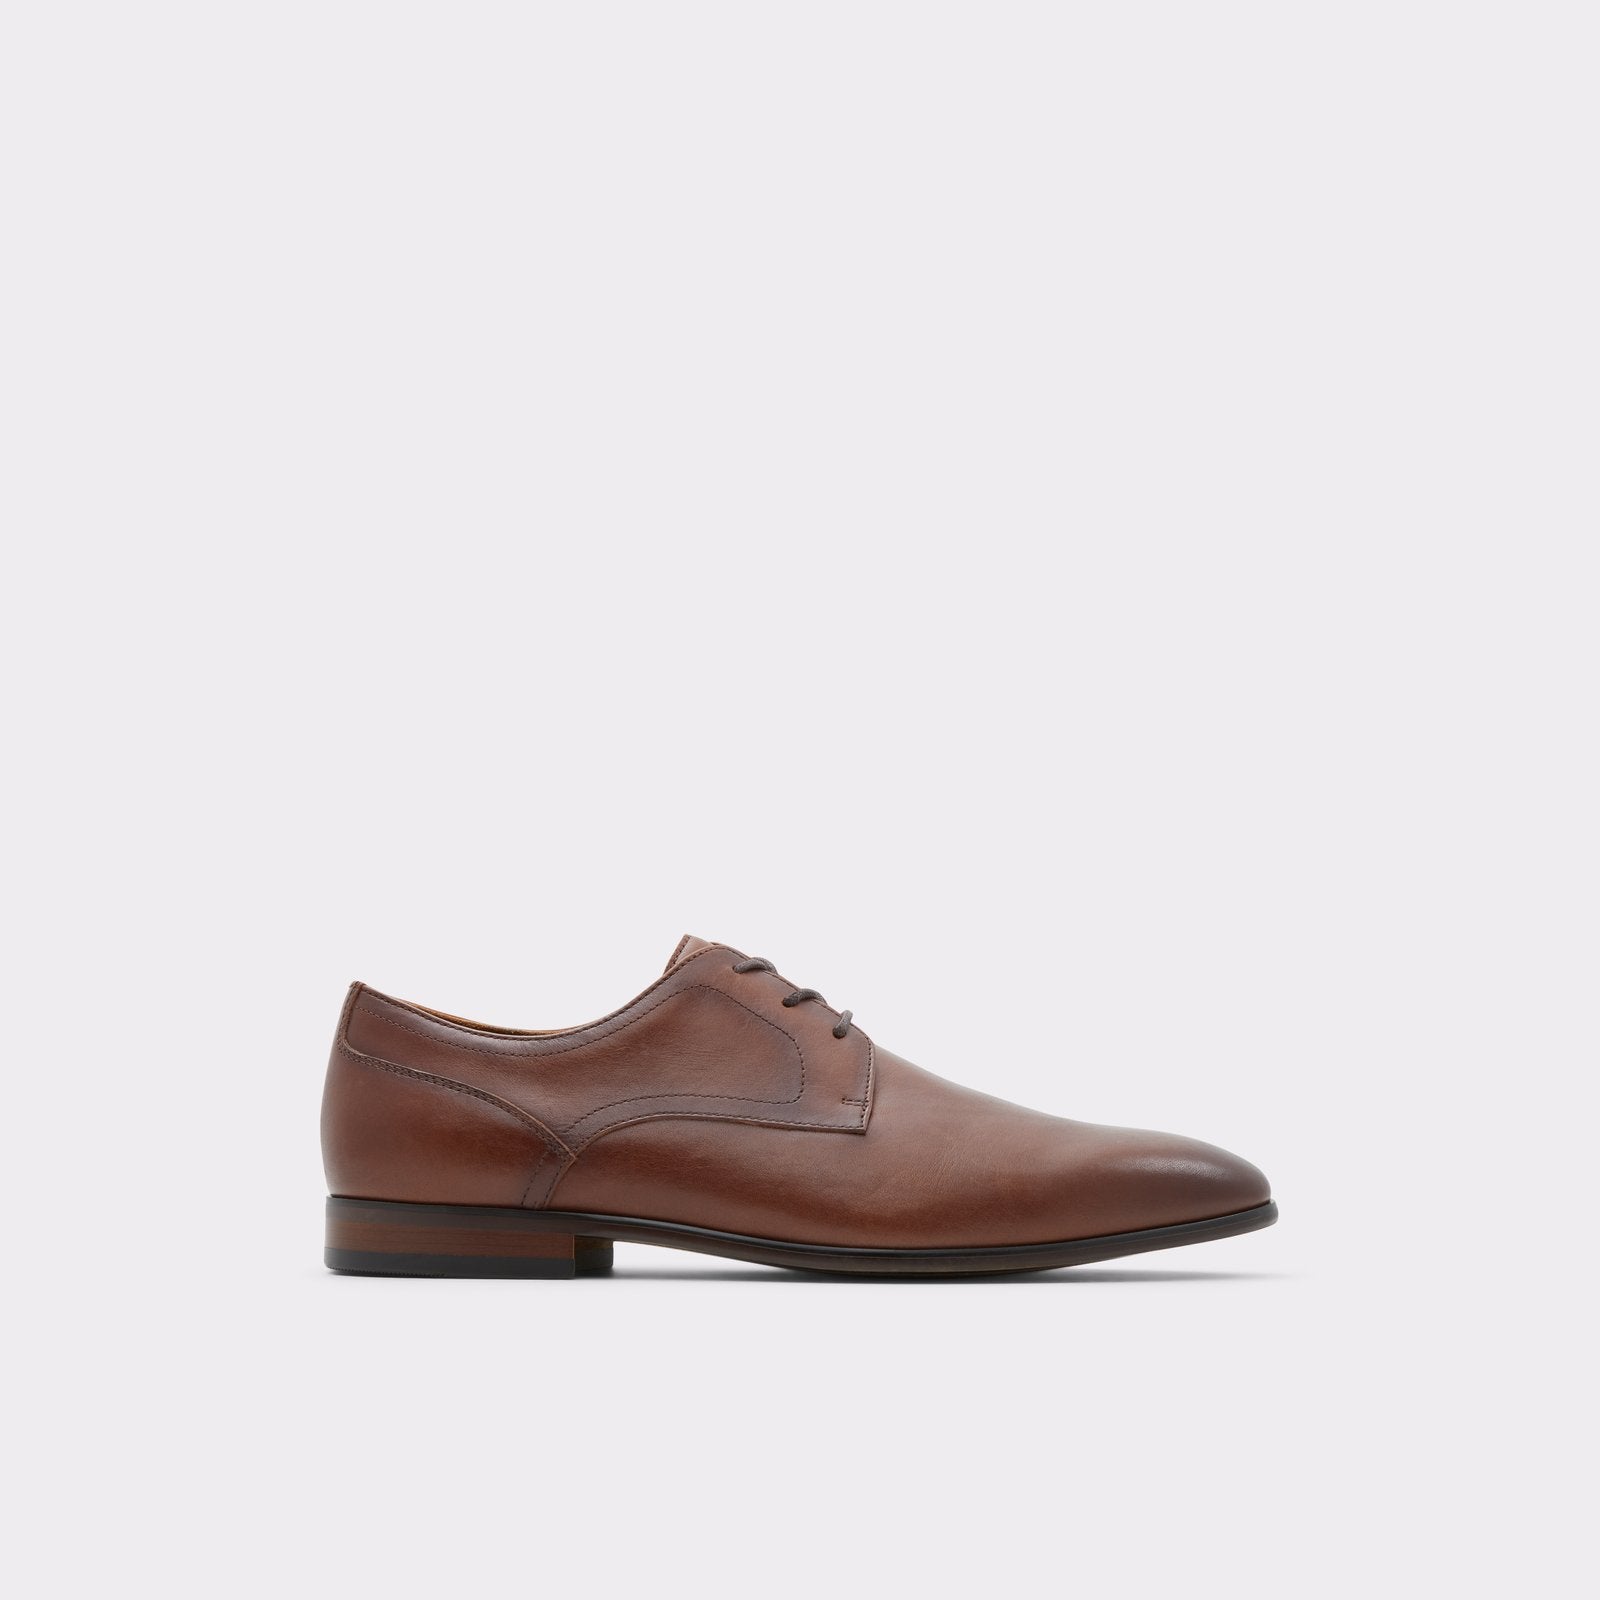 Aldo Men’s Lace Up Shoes Delfordflex (Light Brown)